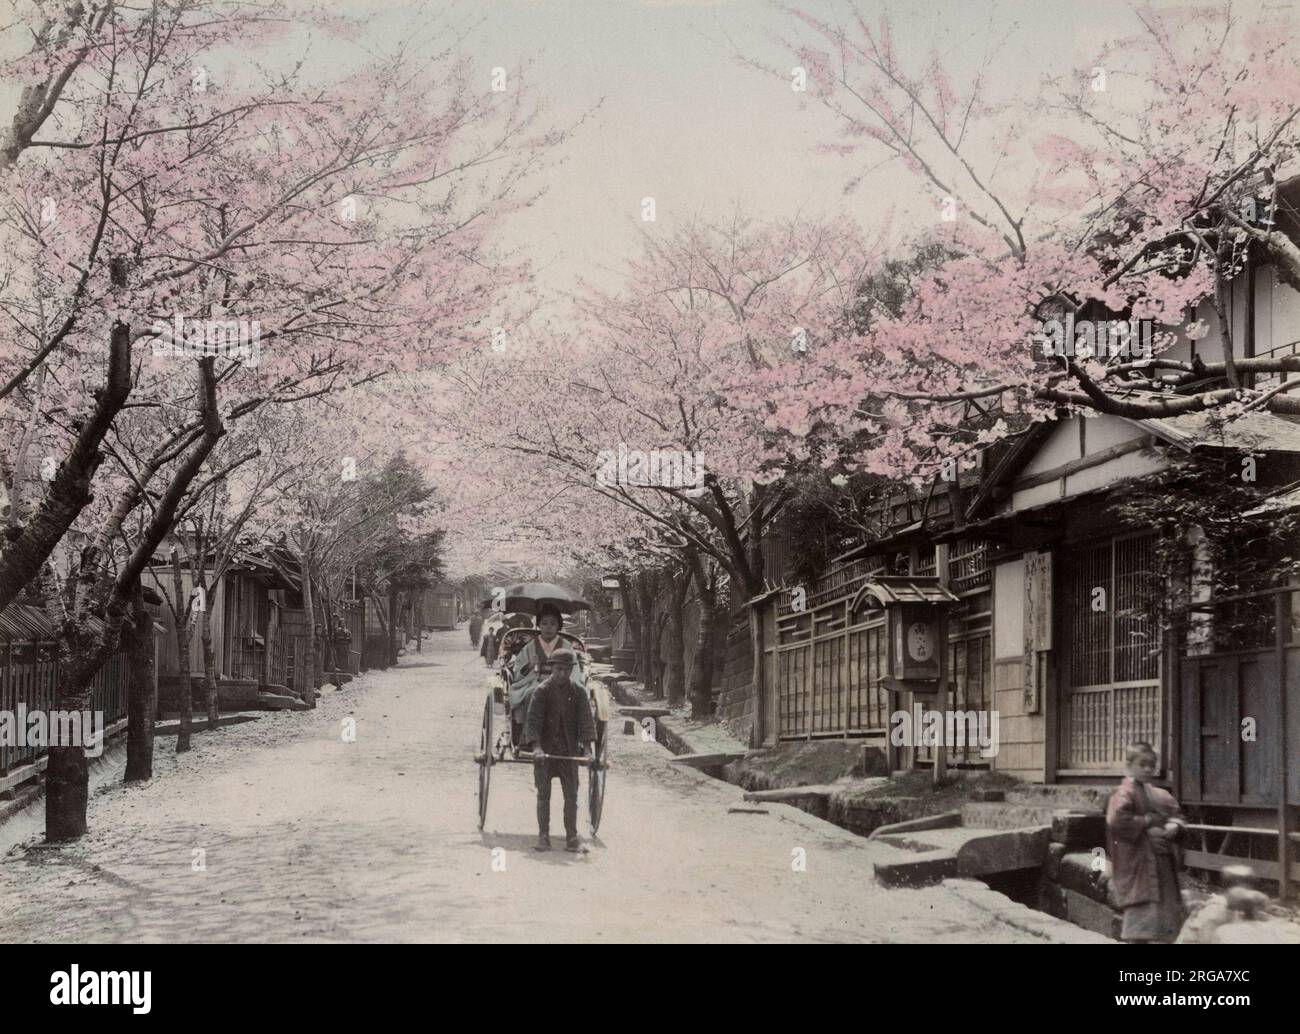 Fiore di ciliegio e risciò, Nogeyama, Yokohama, Giappone. Vintage 19th ° secolo fotografia. Foto Stock